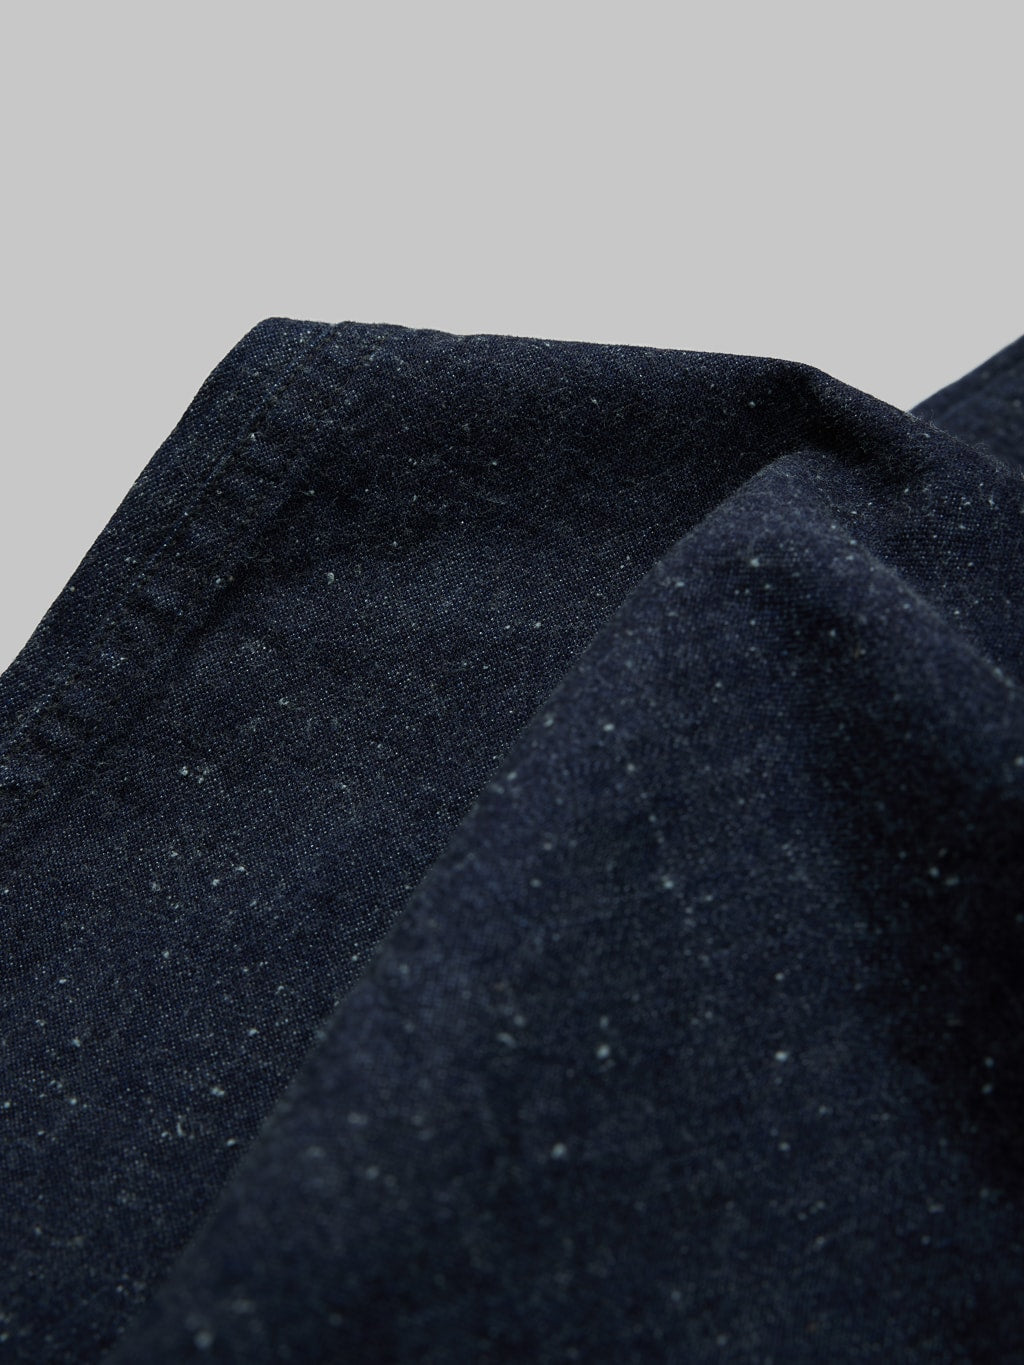 tcb jeans usn seamens denim trousers fabric texture